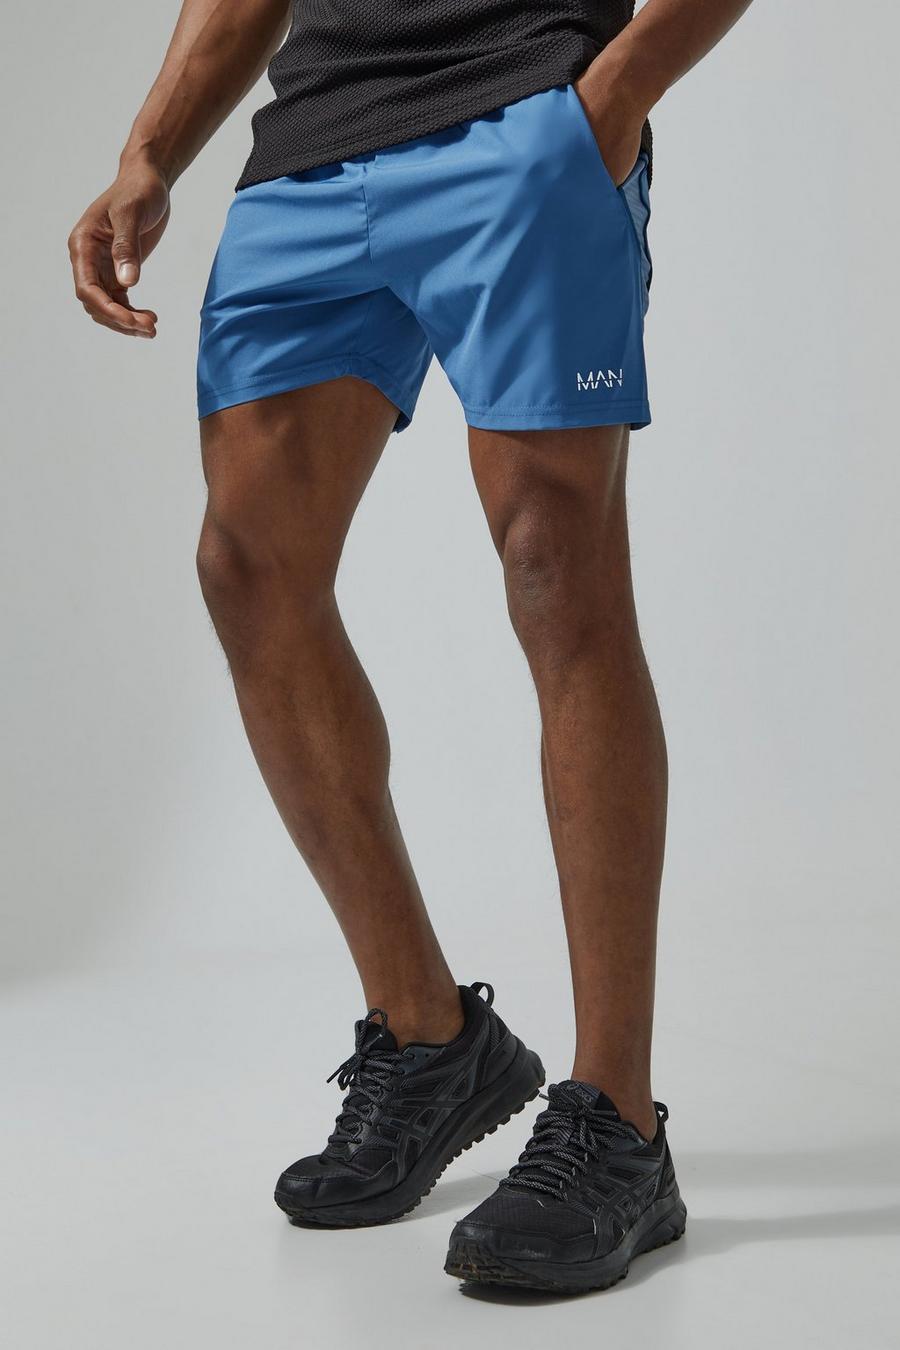 Man Active strukturierte Colorblock Mesh-Shorts, Dusty blue